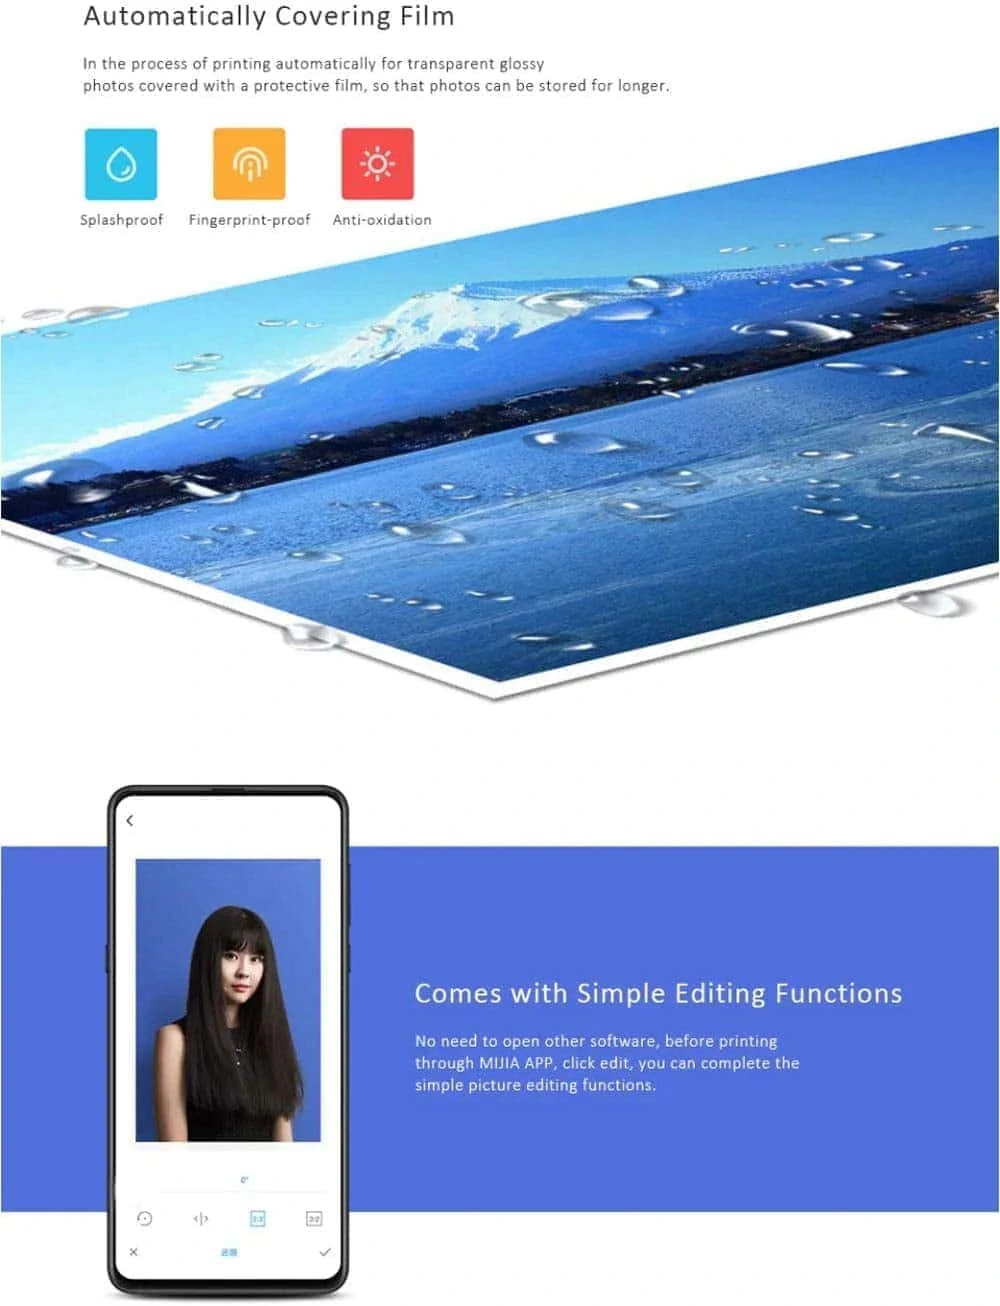 Xiaomi Mijia Photo Printer- Wireless remote connection-White